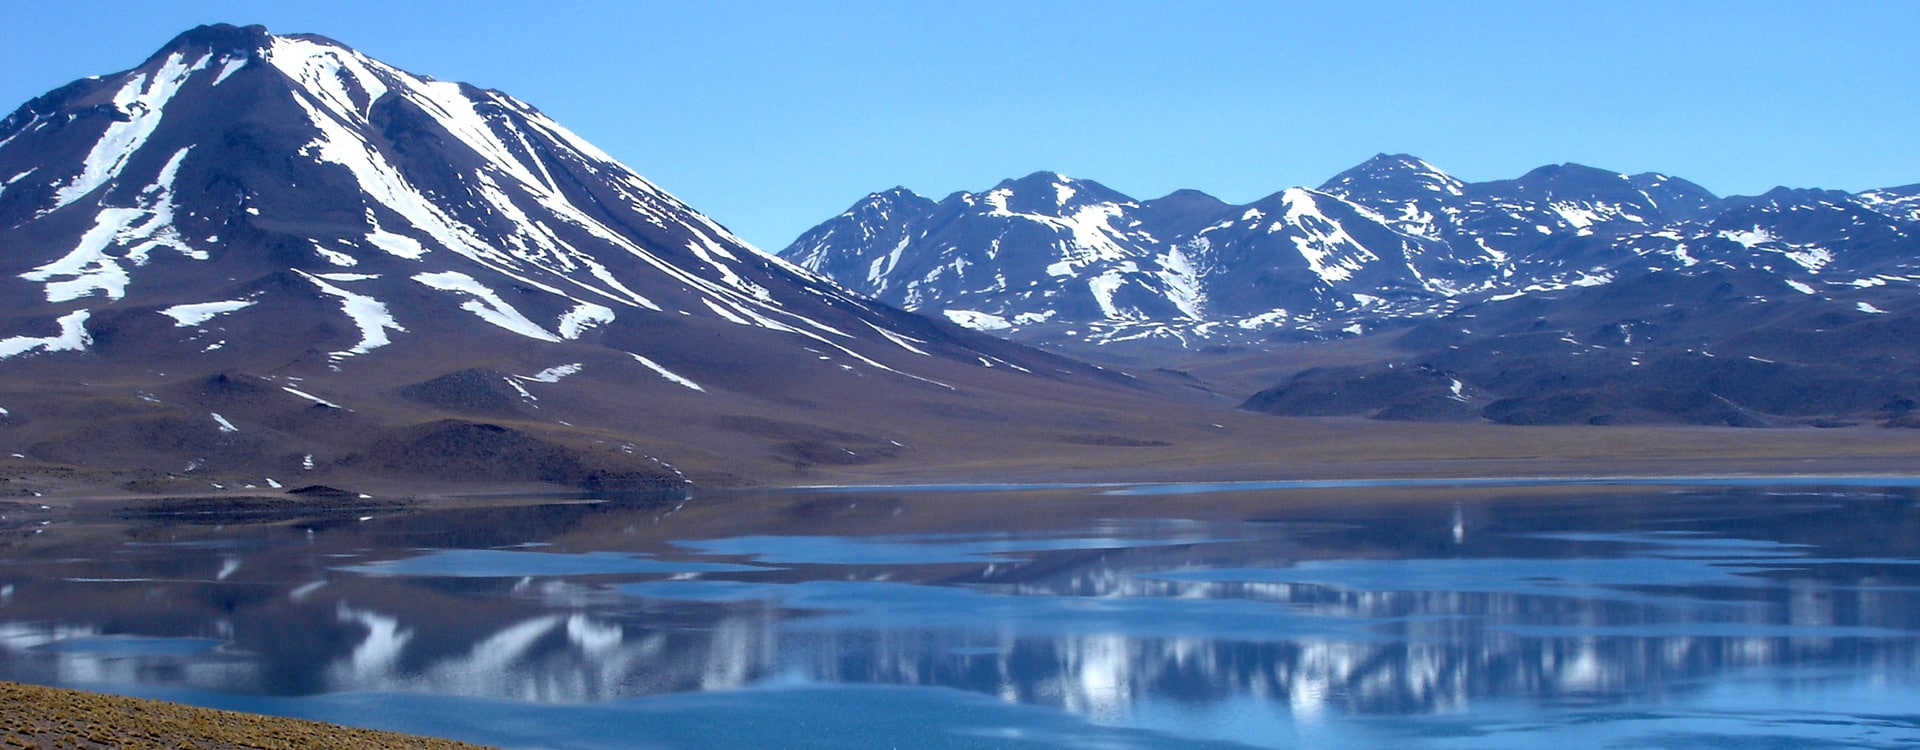 Chili altiplano laguna lac miscanti Miñiques cerro montagne atacama